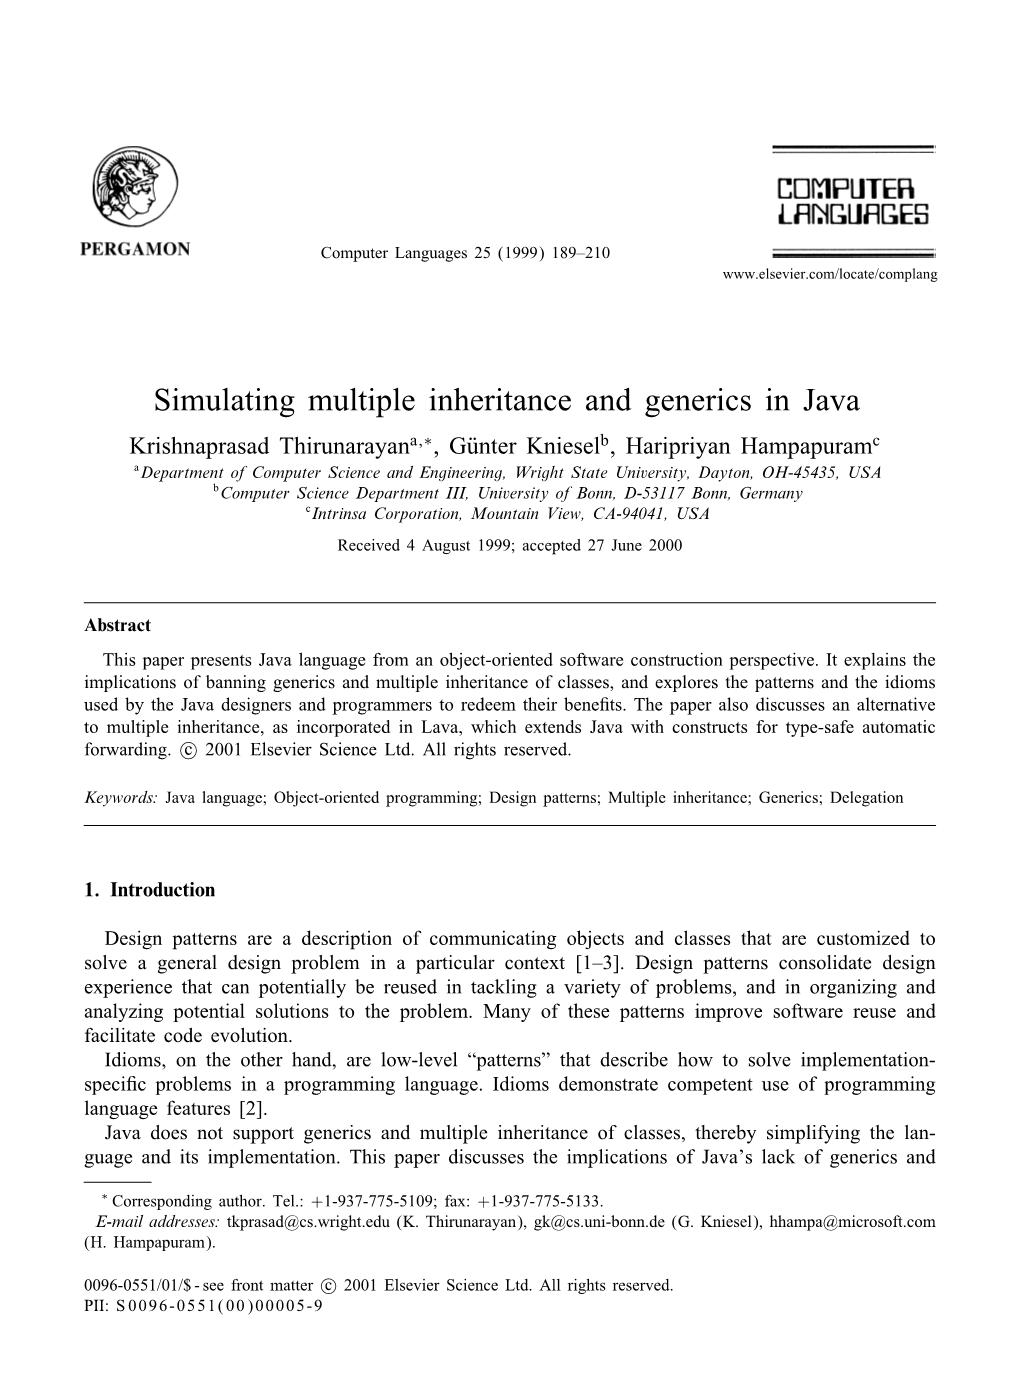 Simulating Multiple Inheritance and Generics in Java